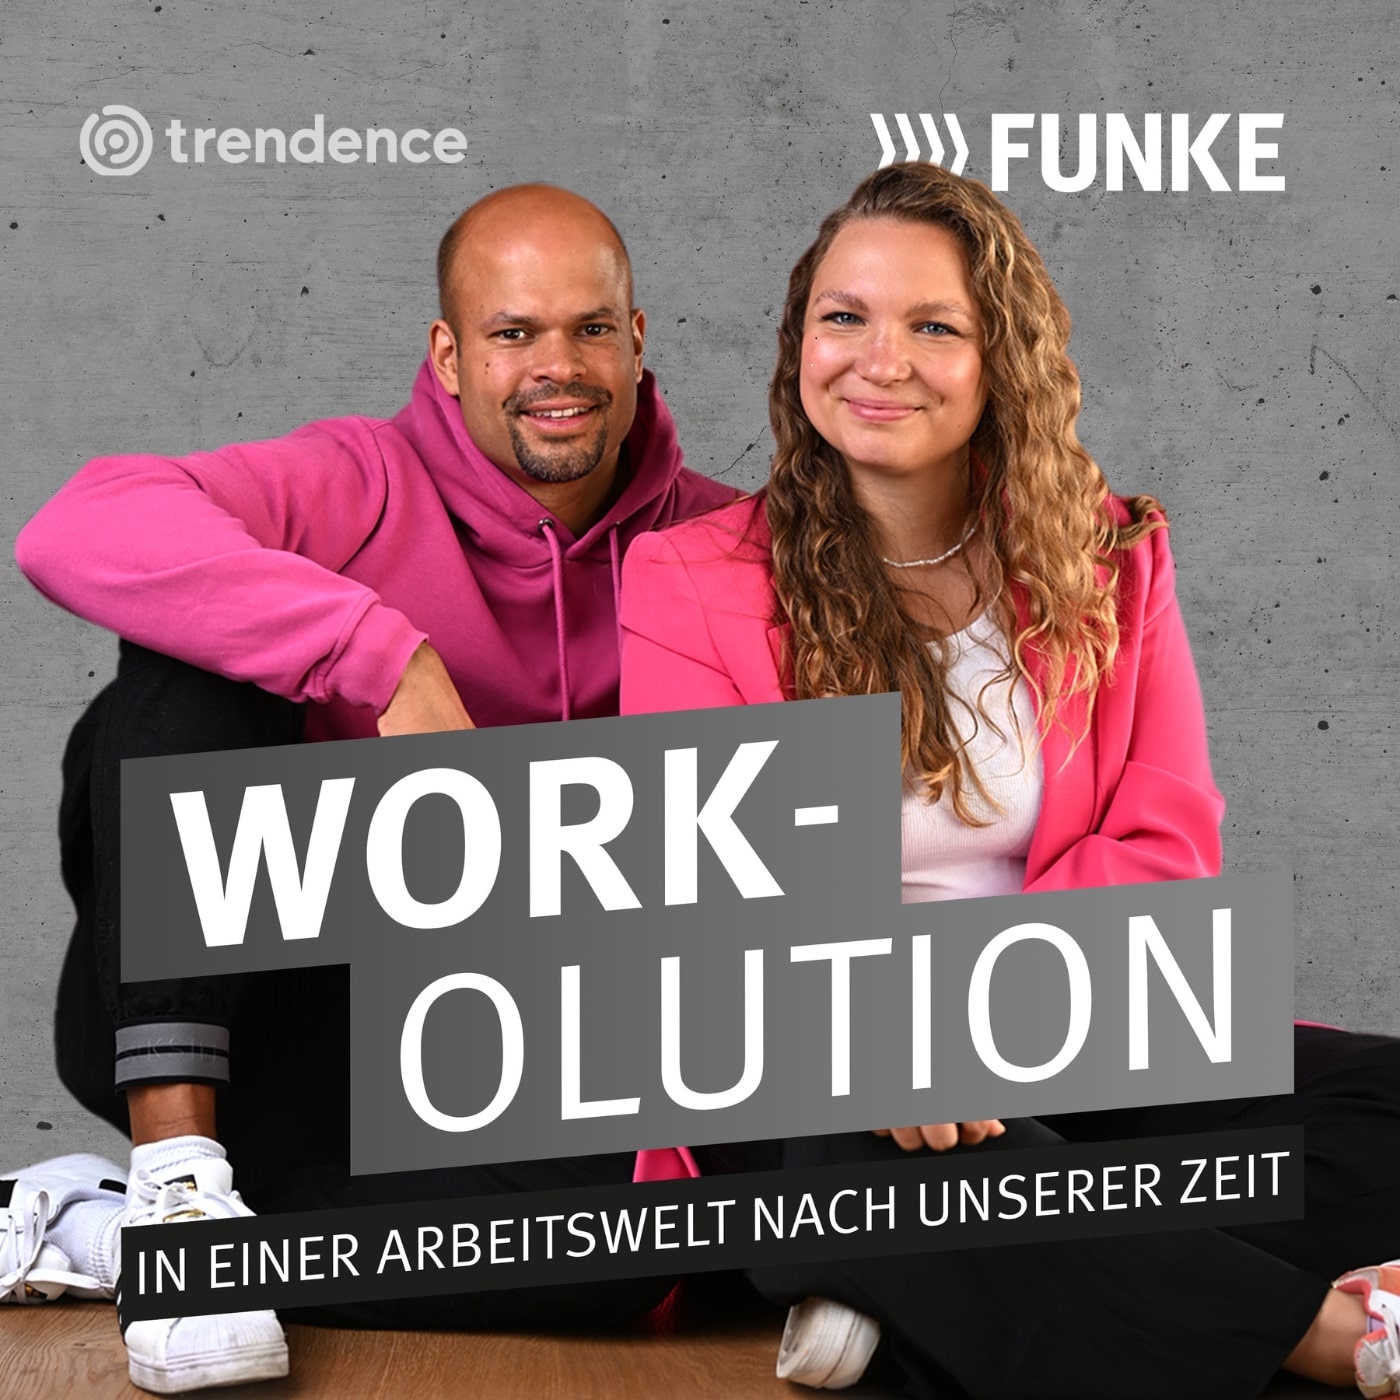 Funke startet Podcast zur Zukunft der Arbeitswelt